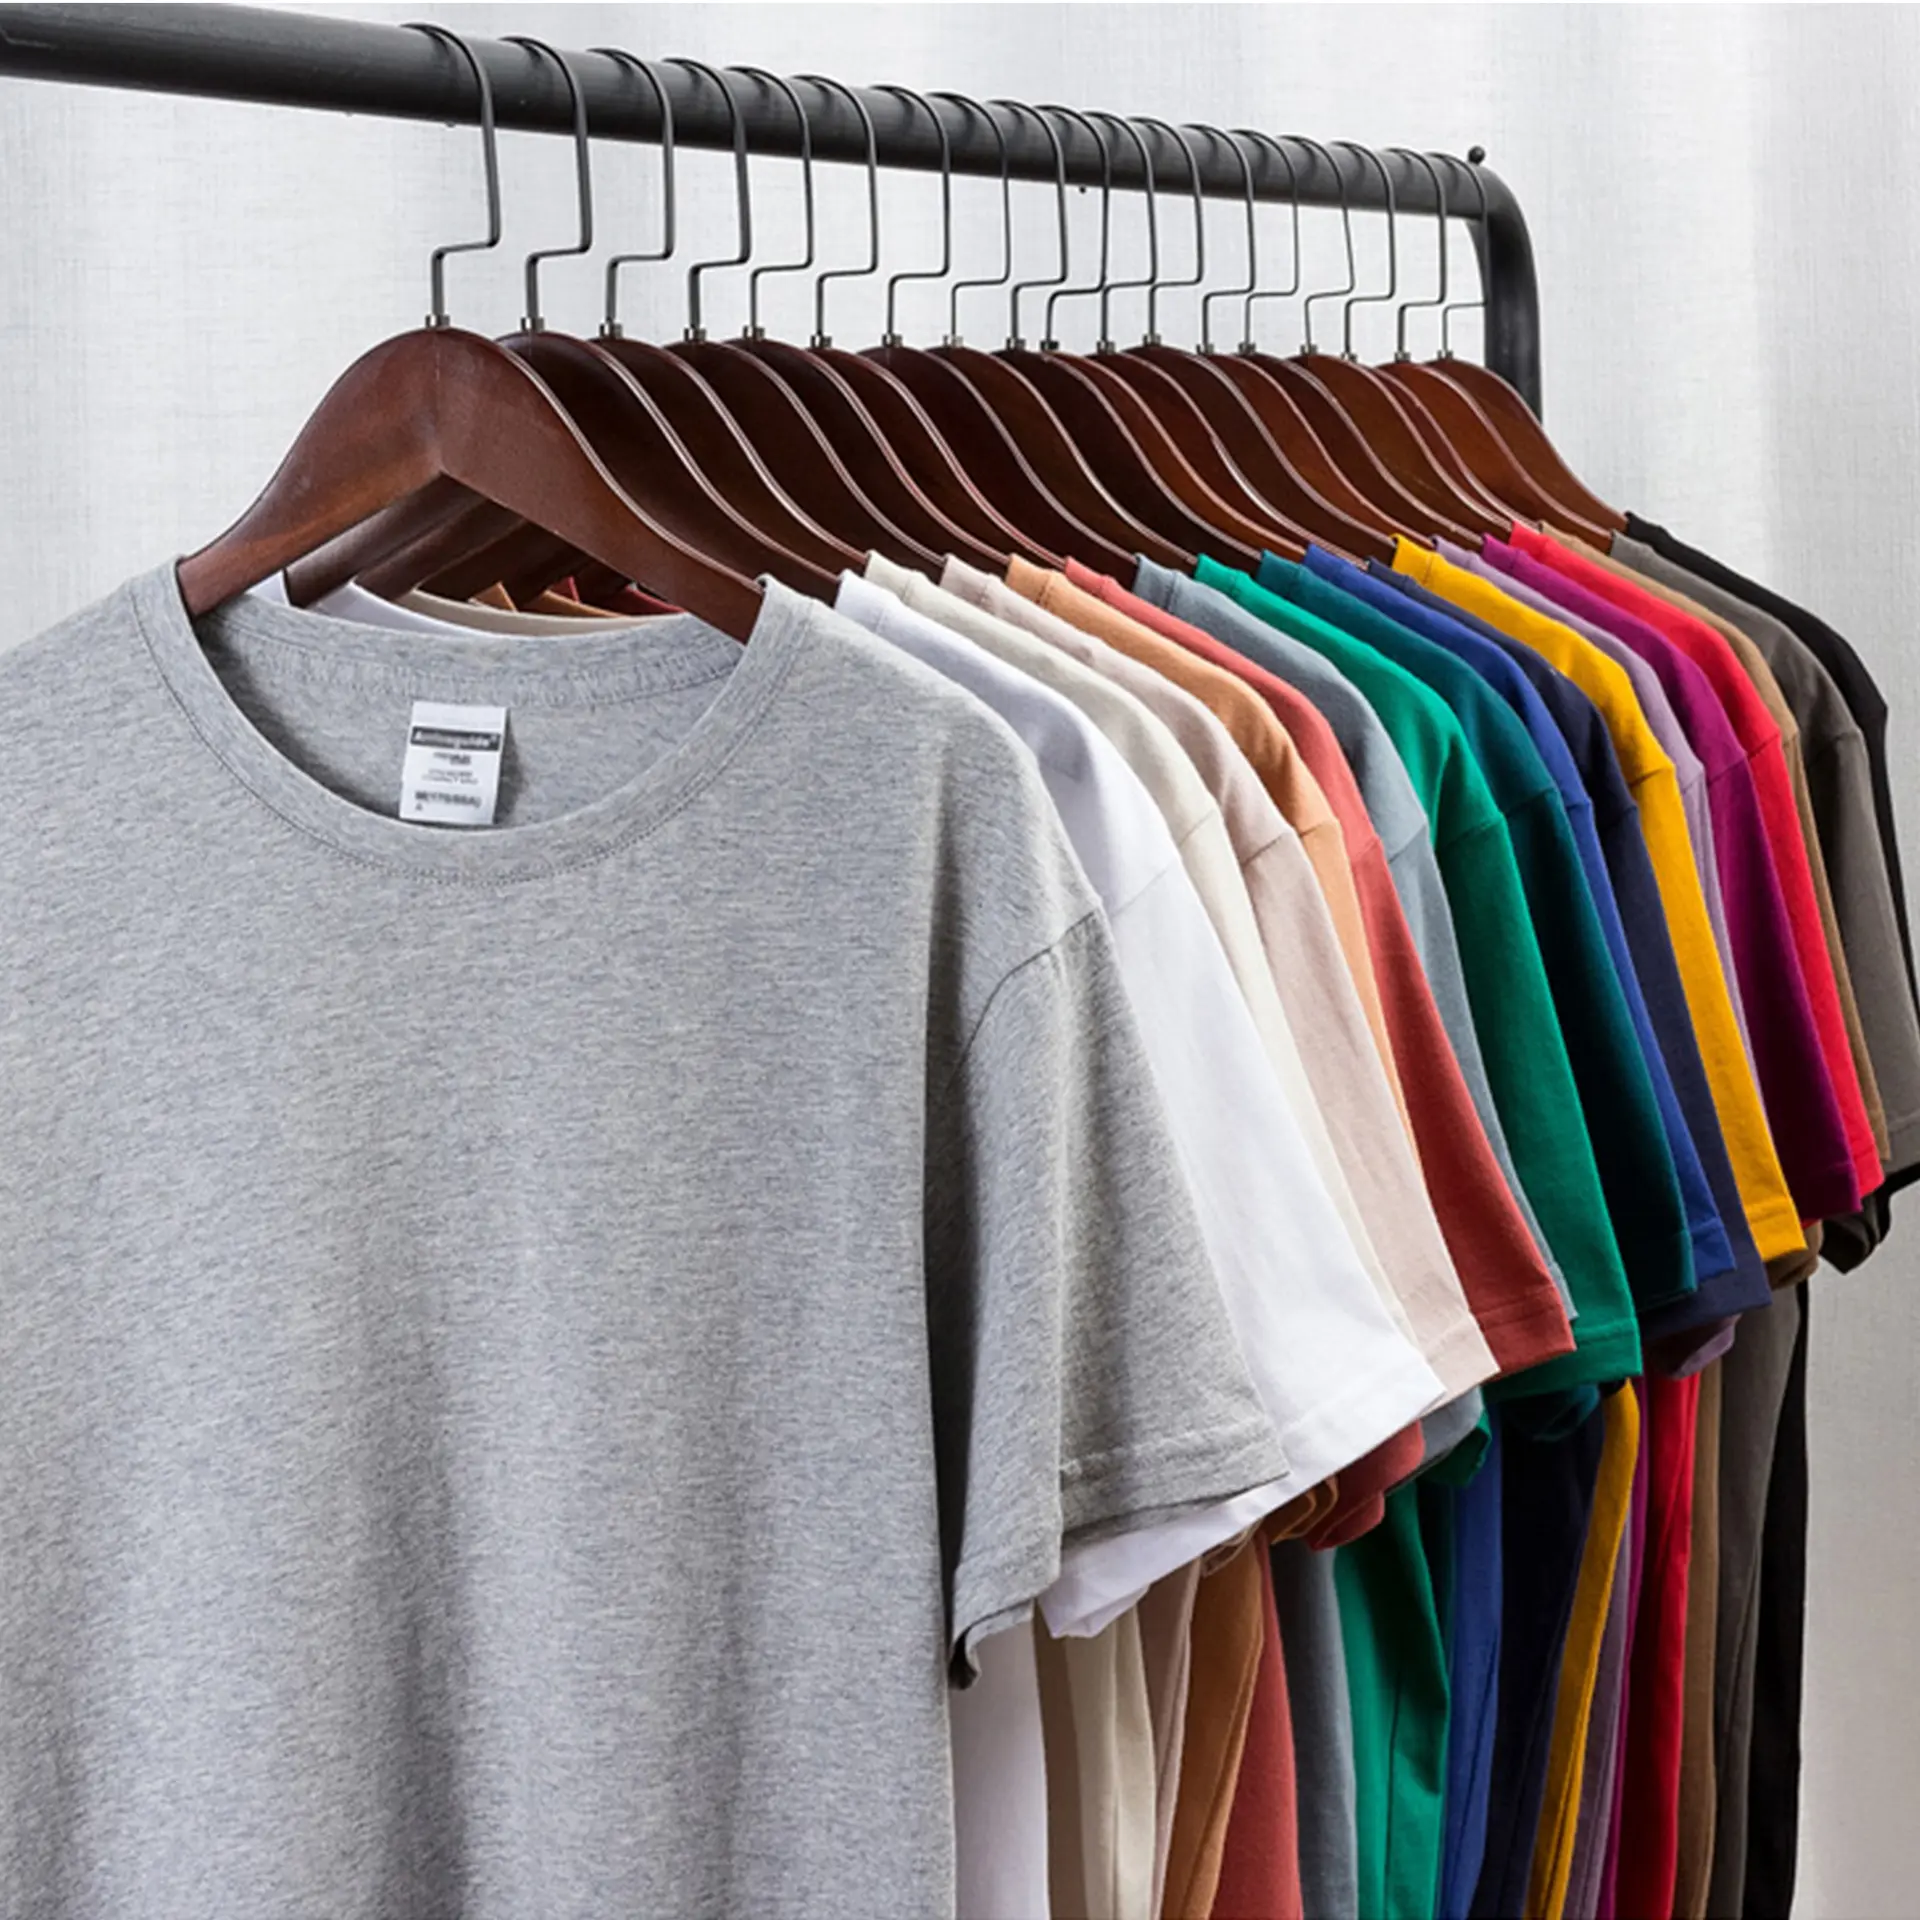 뜨거운 판매 180g-250g 빈 일반 남성 티셔츠 100% 면 남여 공용 T 셔츠 부어 홈 사용자 정의 로고 인쇄 T 셔츠 남성용